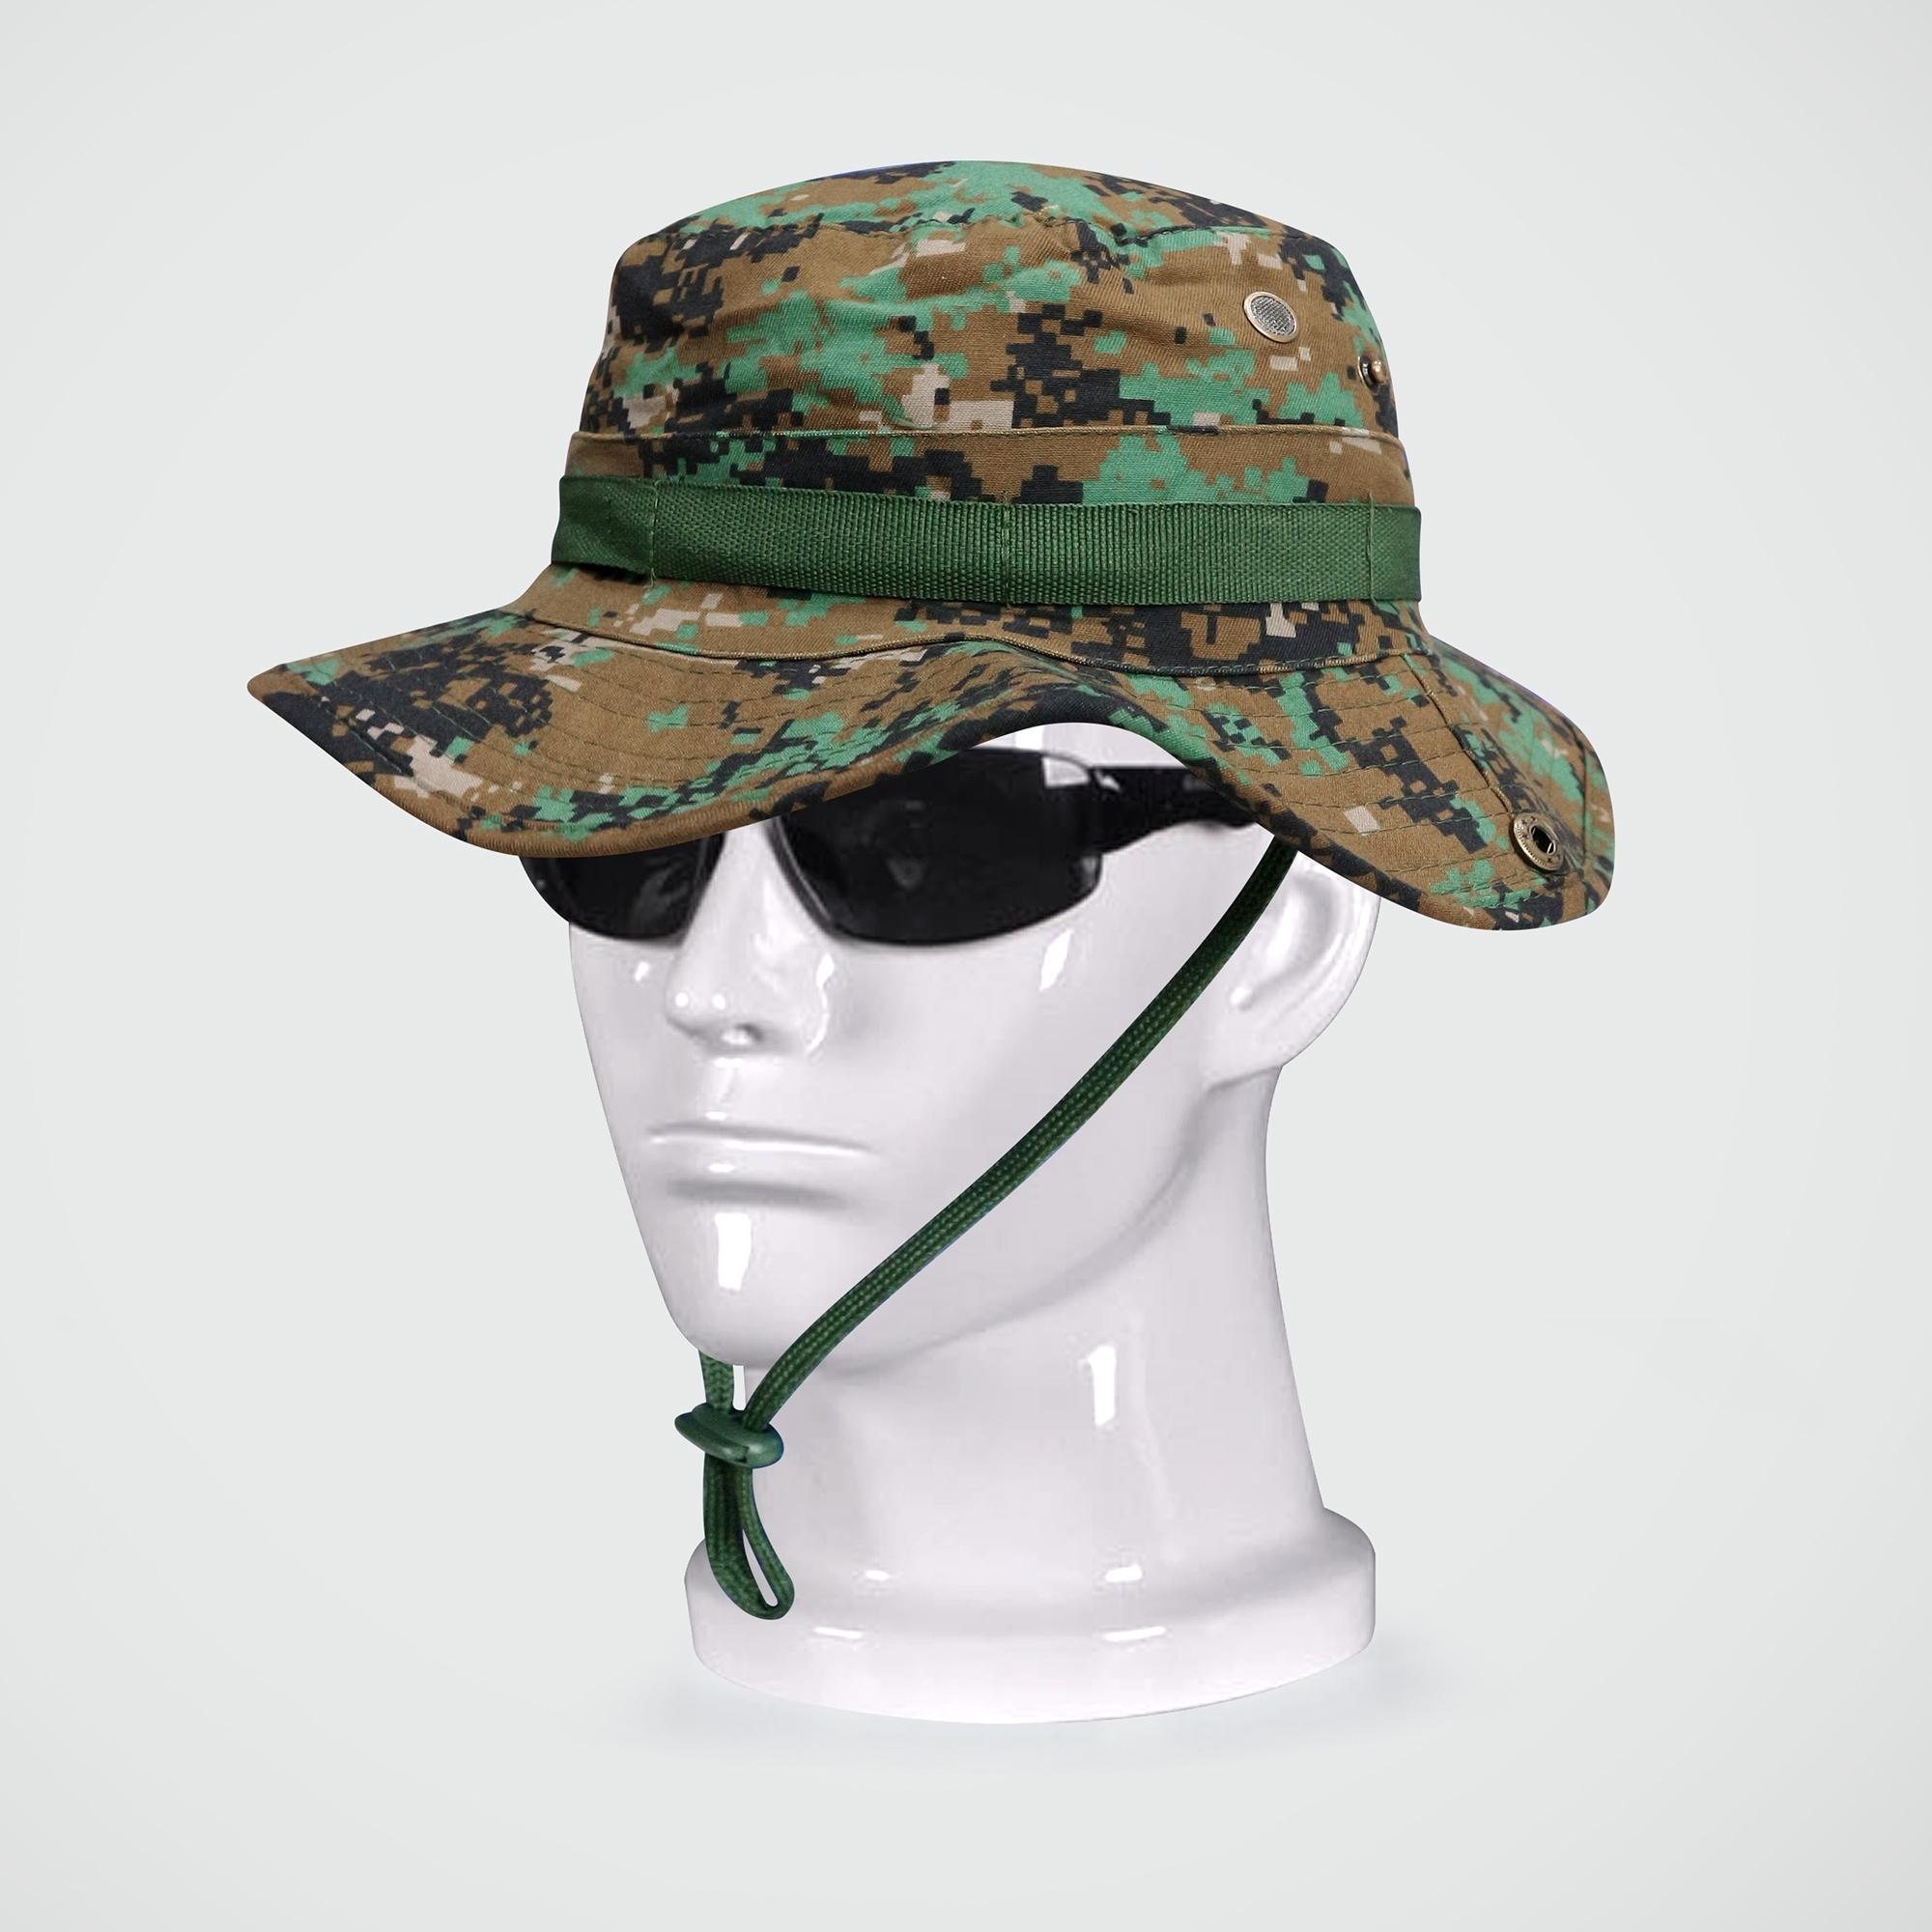 หมวกปีก มี 12 แบบ หมวก หมวกปีกกว้าง หมวกทหาร  หมวกลายทหาร หมวกลายพราง หมวกปีกลายทหาร Update 22/04/64